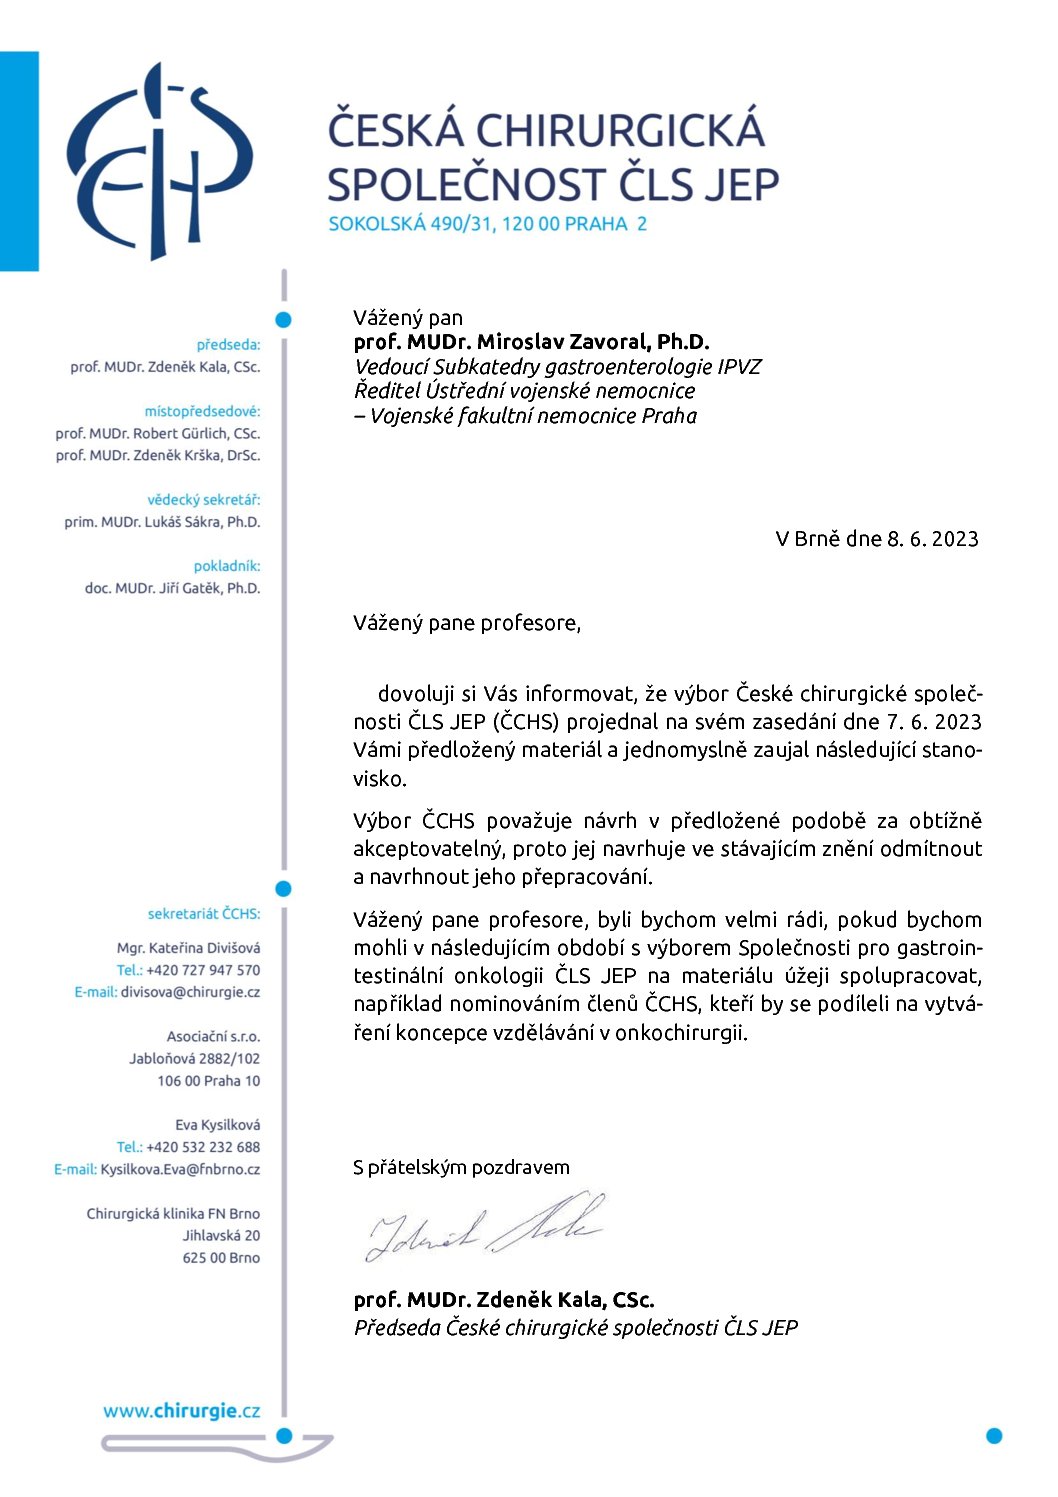 Stanovisko výboru ČCHS ČLS JEP k návrhu VPNO: Gastrointestinální onkologie (8. 6. 2023)